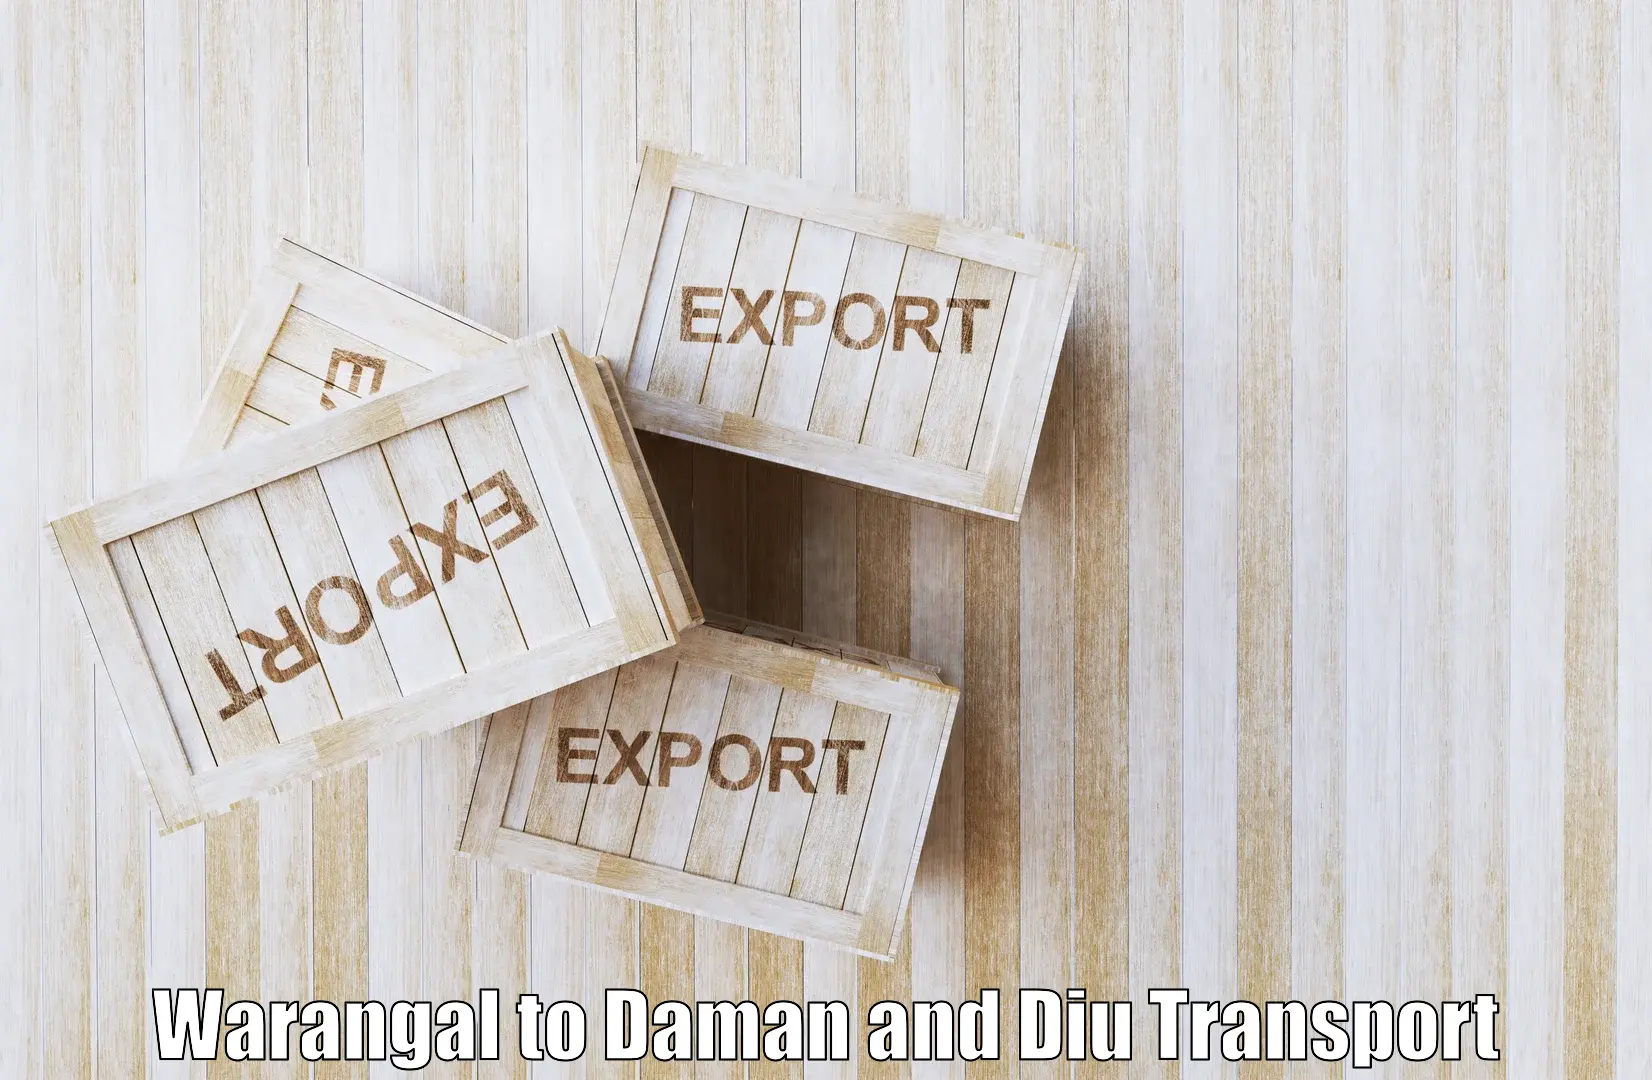 Two wheeler parcel service Warangal to Diu